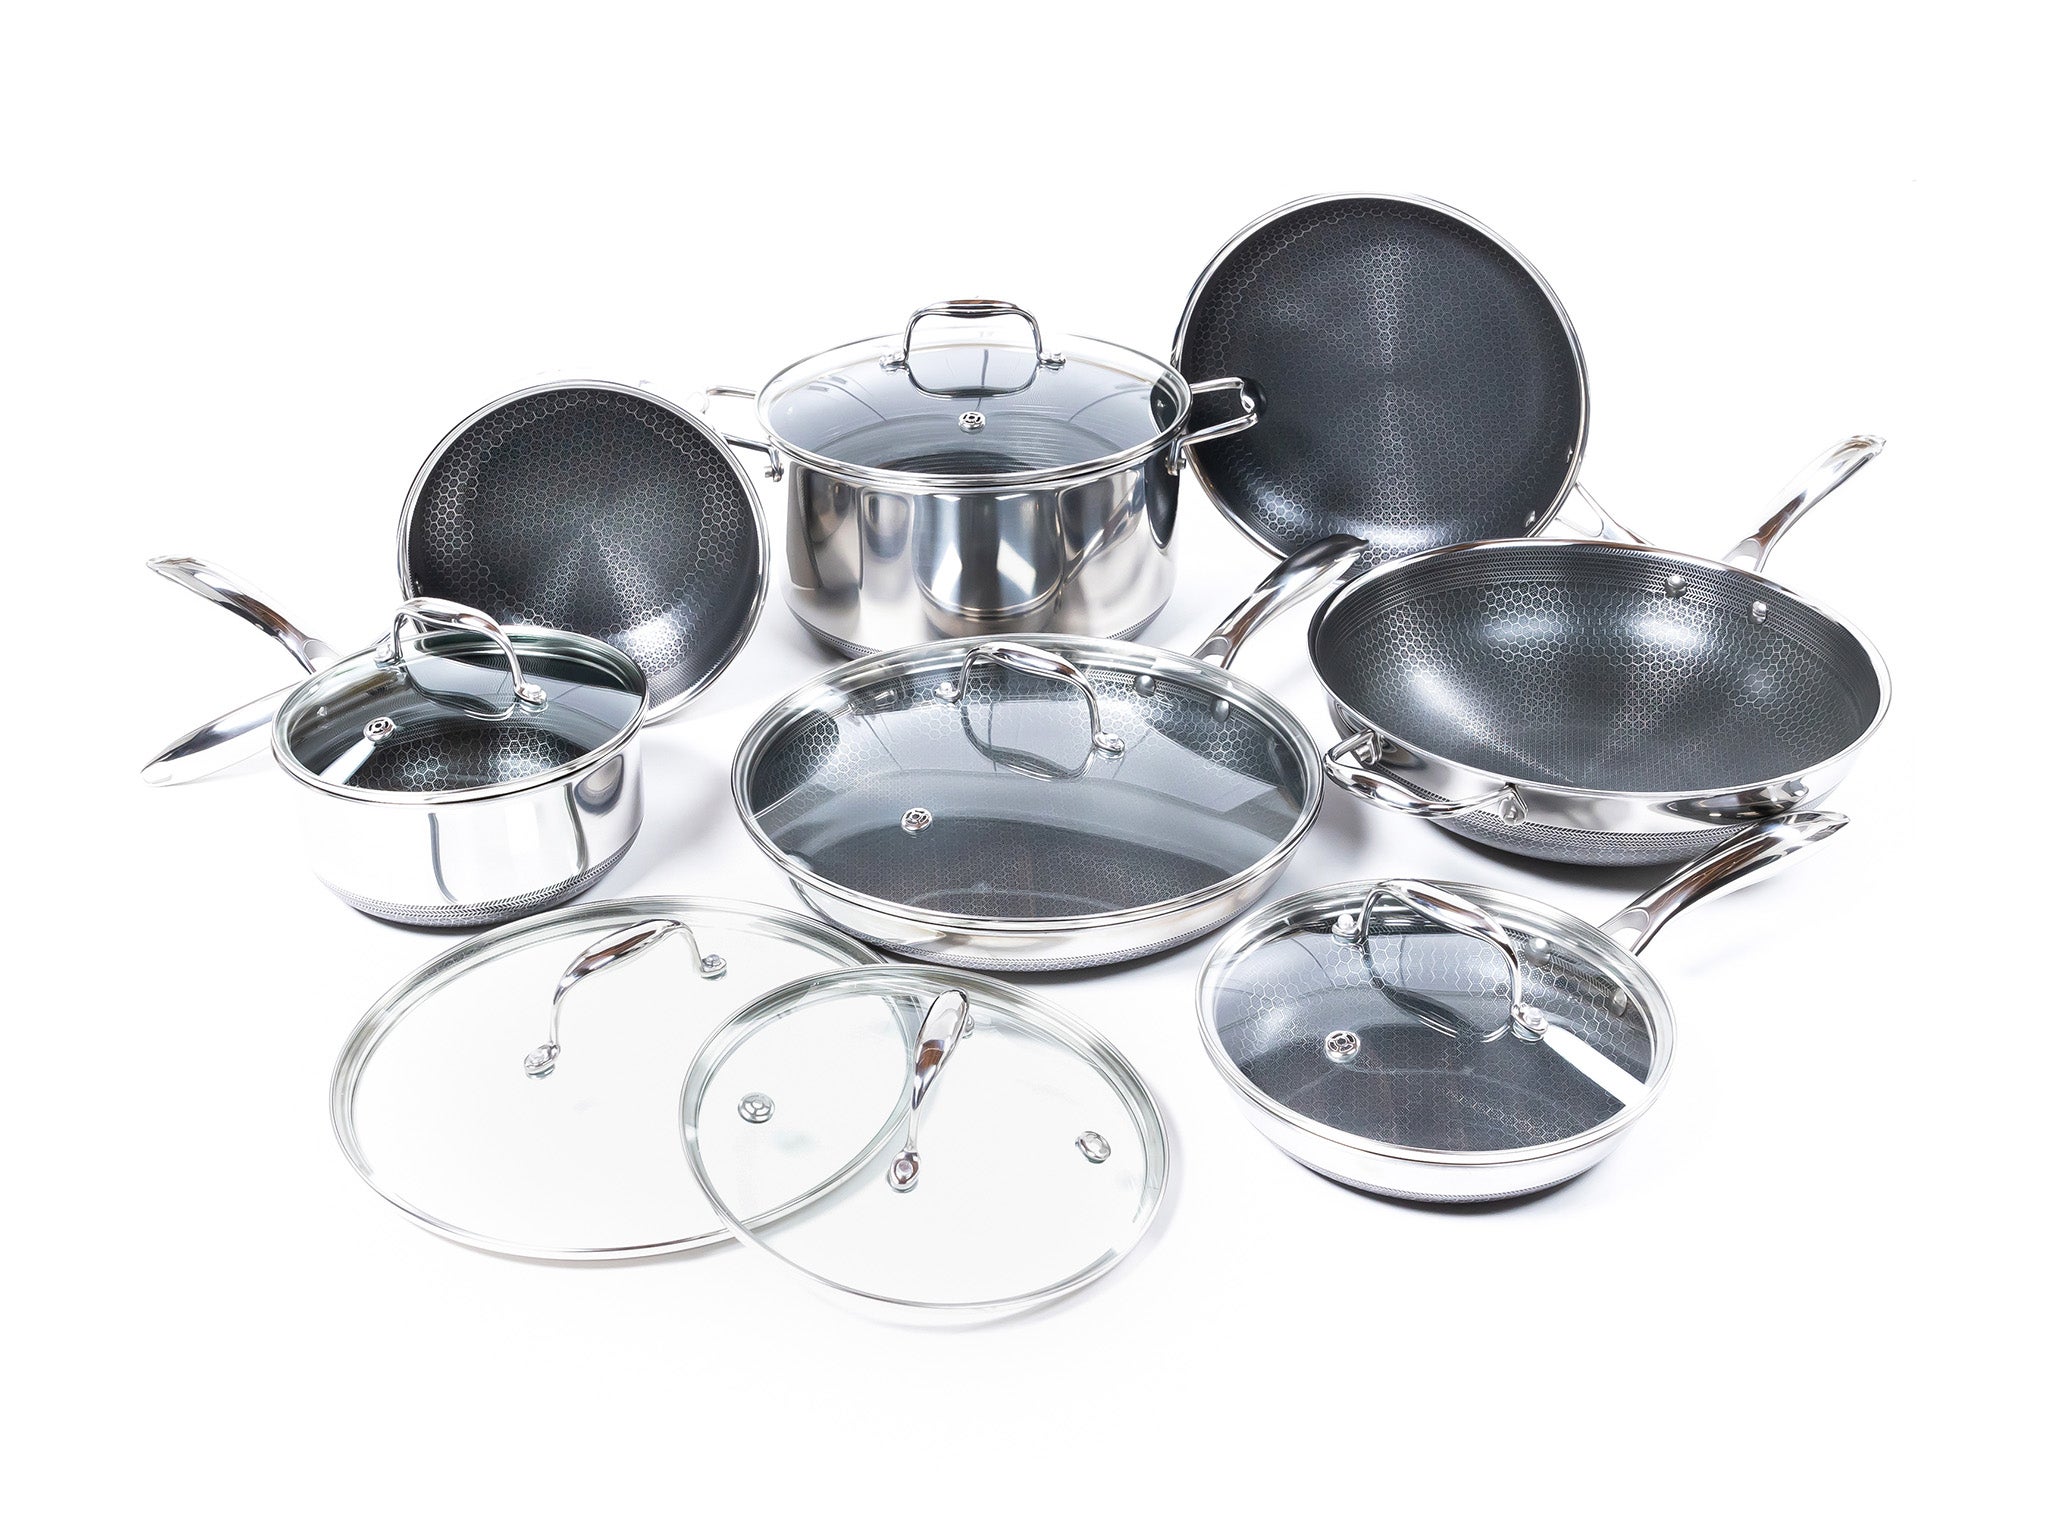 Hexclad 13-piece hybrid cookware set 